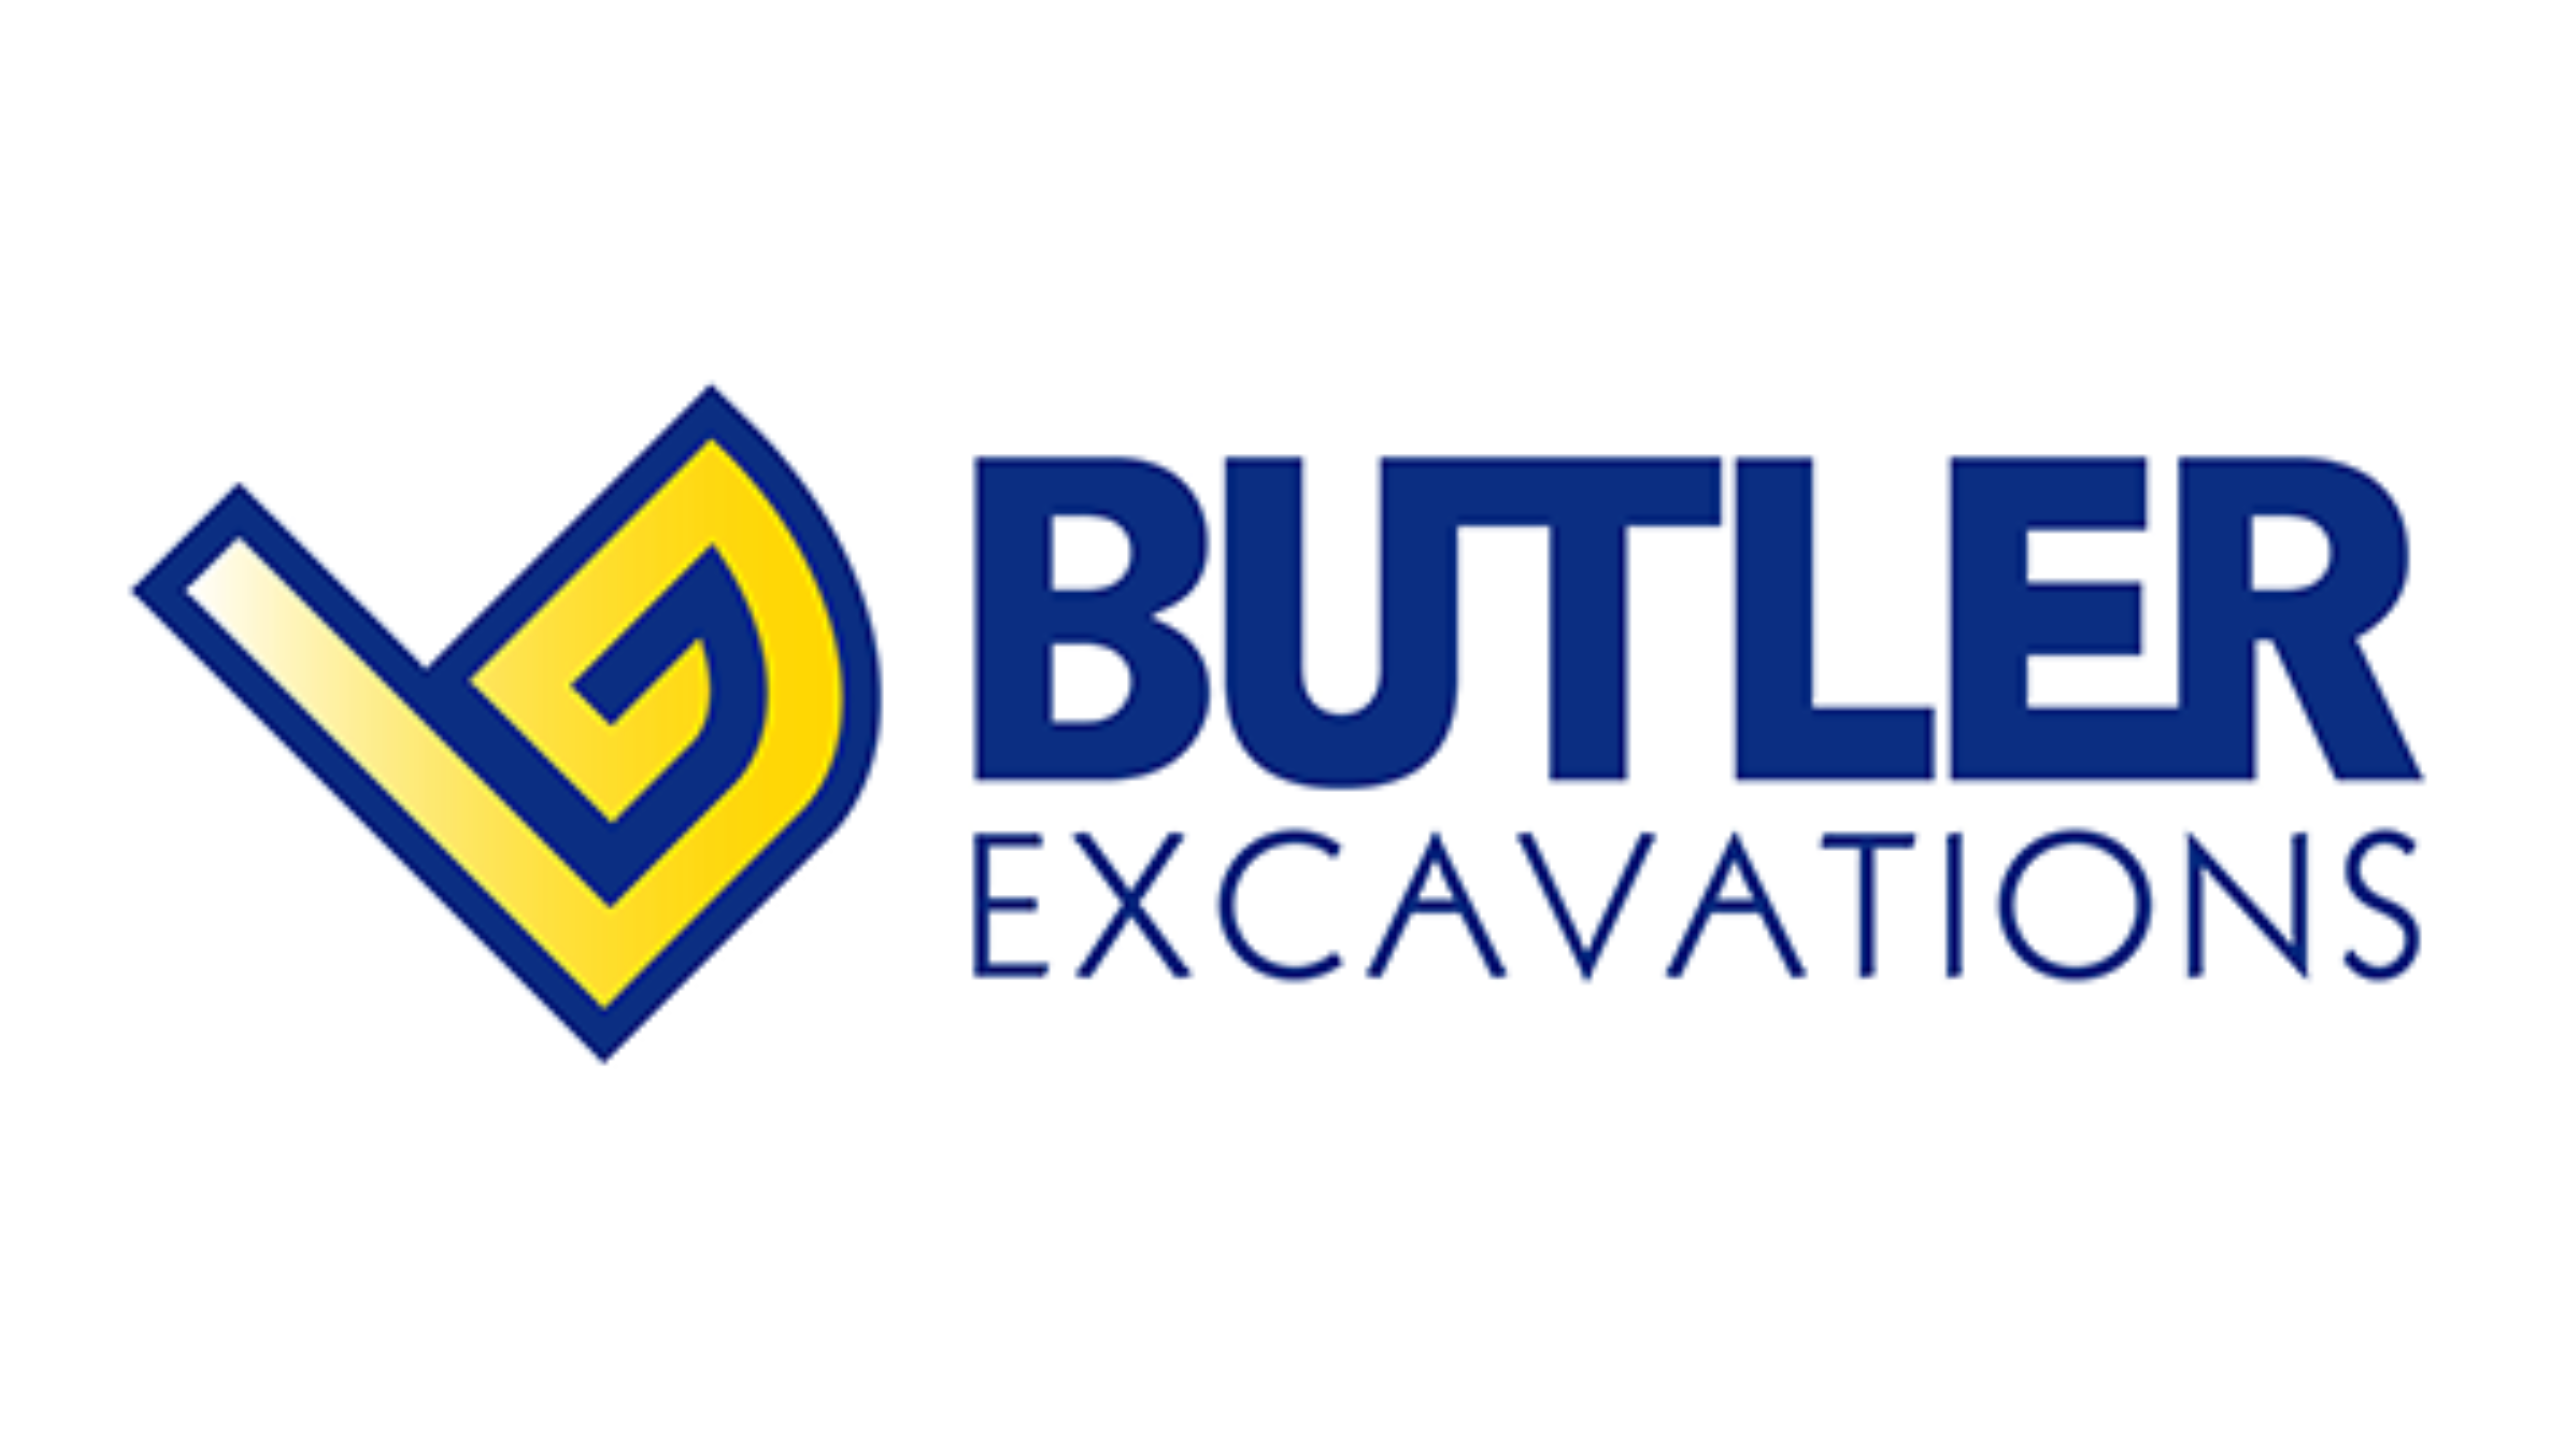 Butler Excavations (Screen)